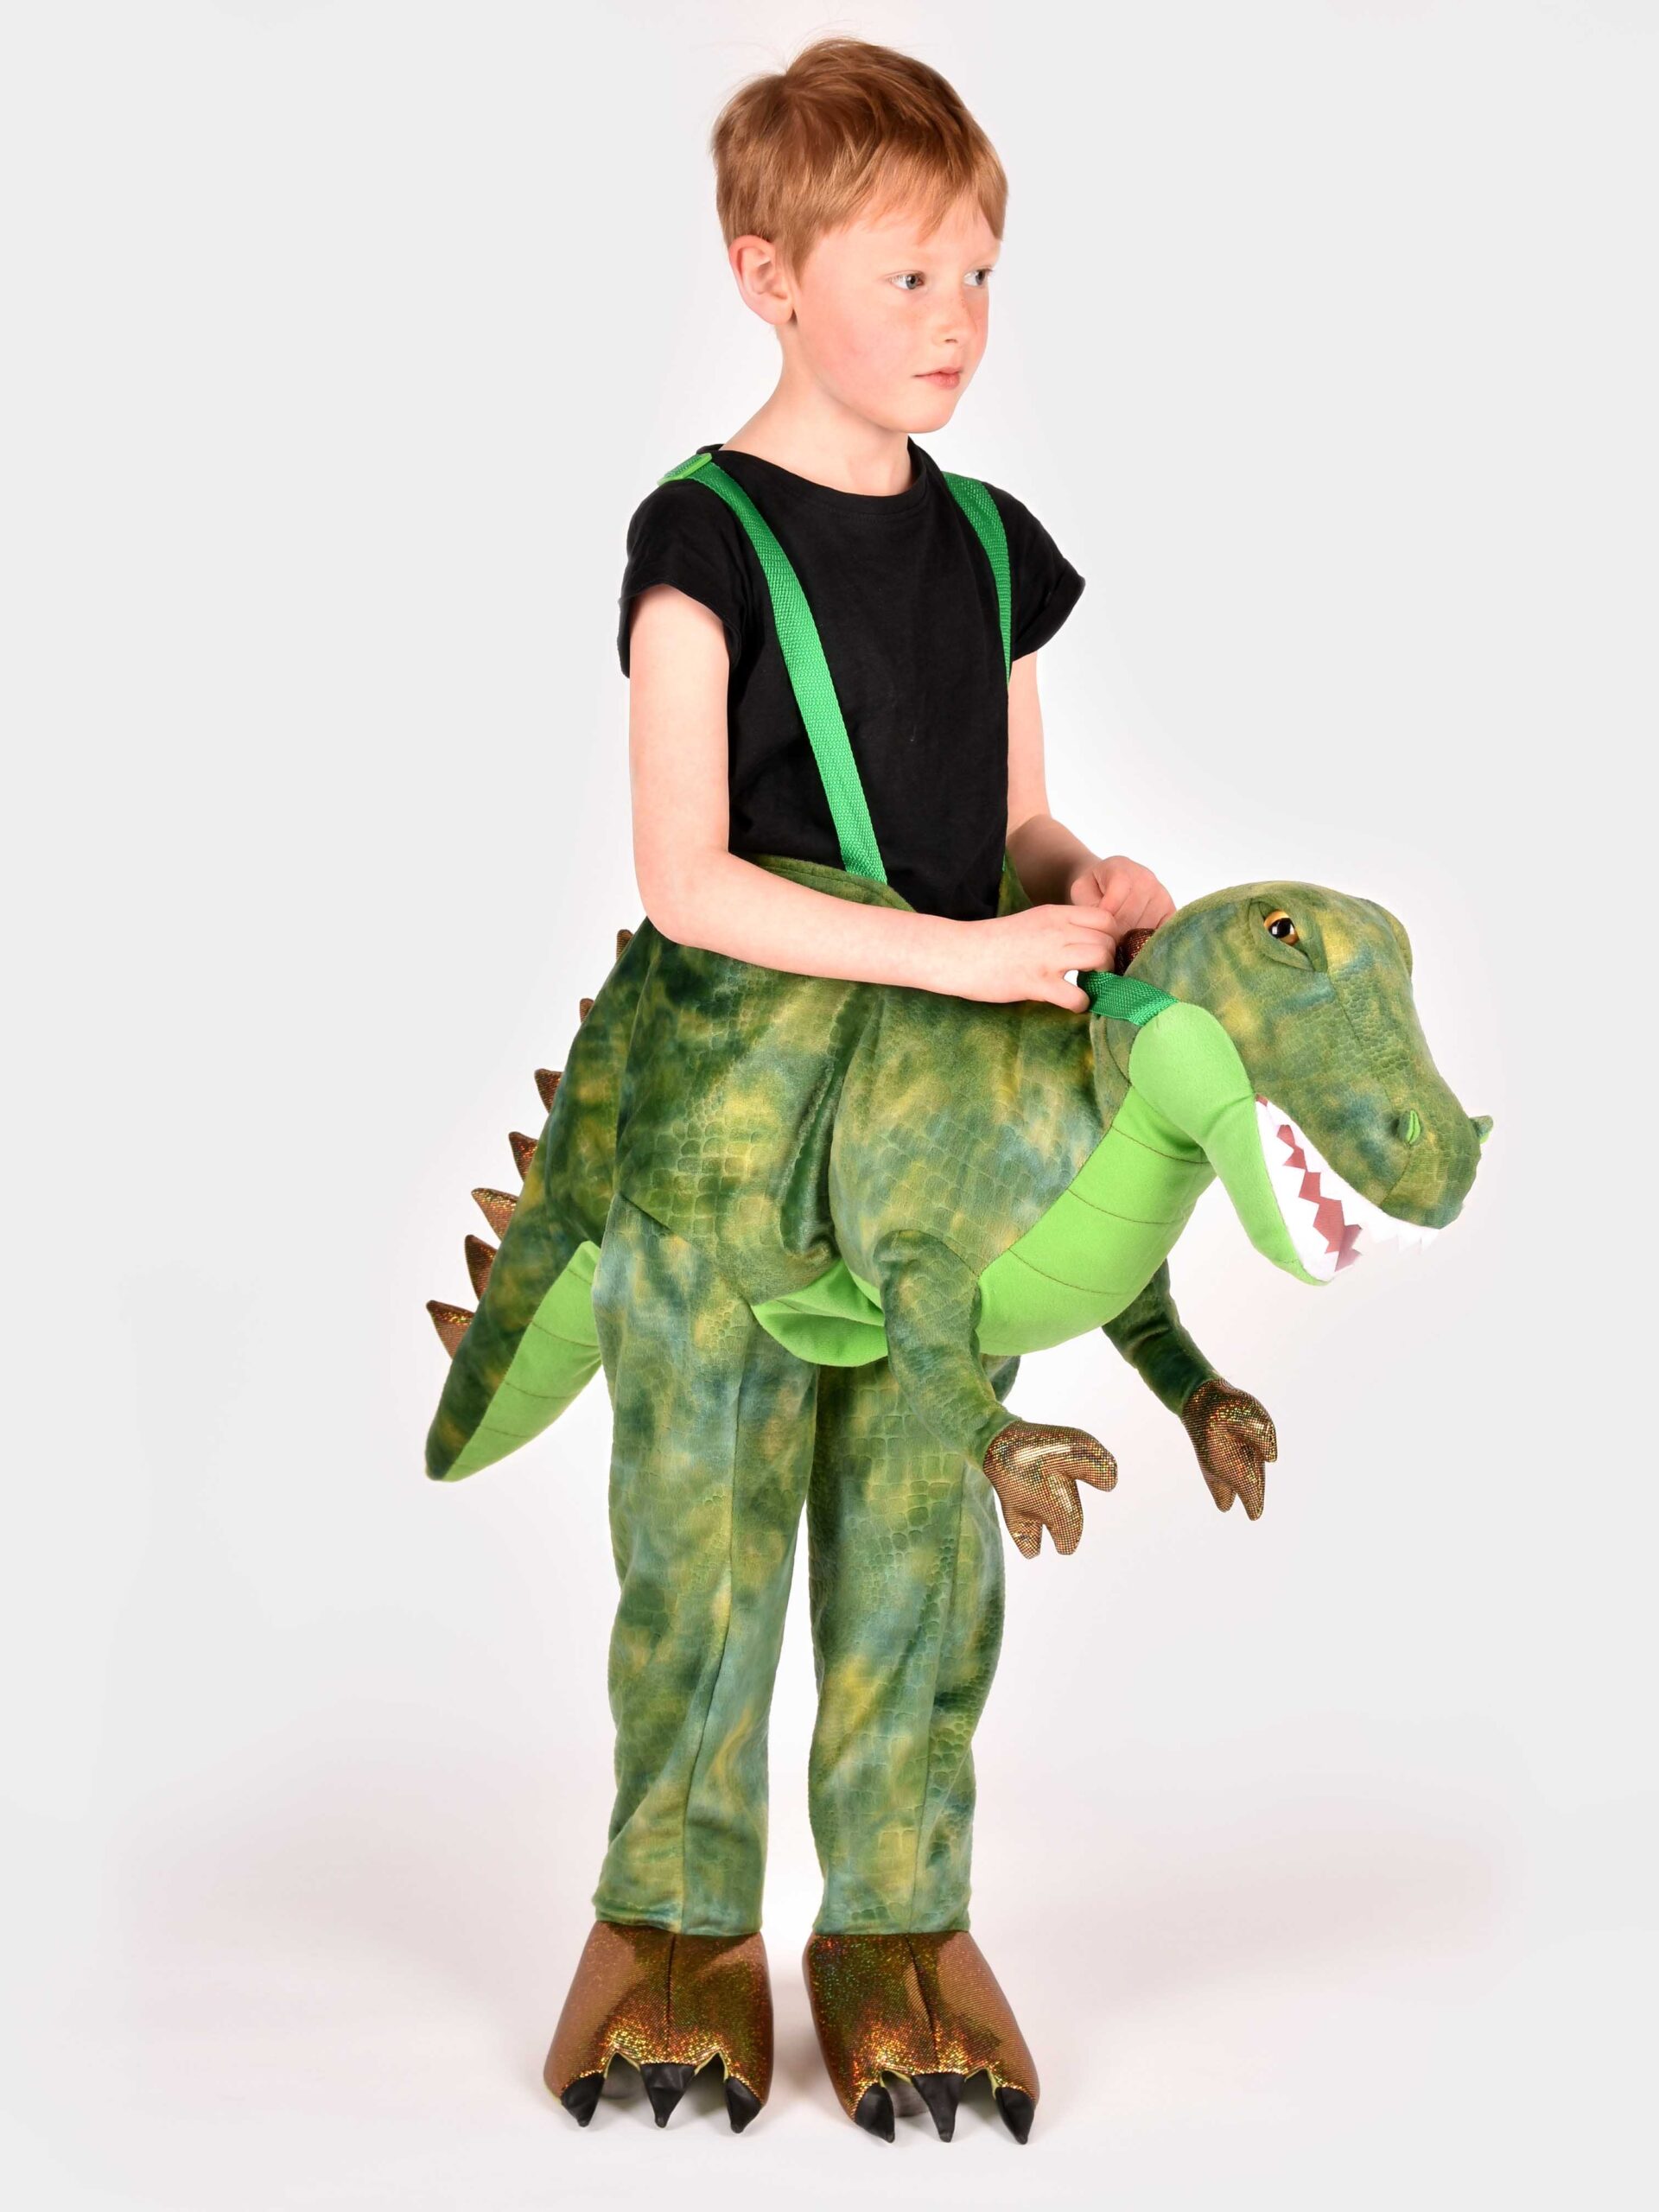 pojke iklädd grönmelerad vadderad dinosauriedräkt